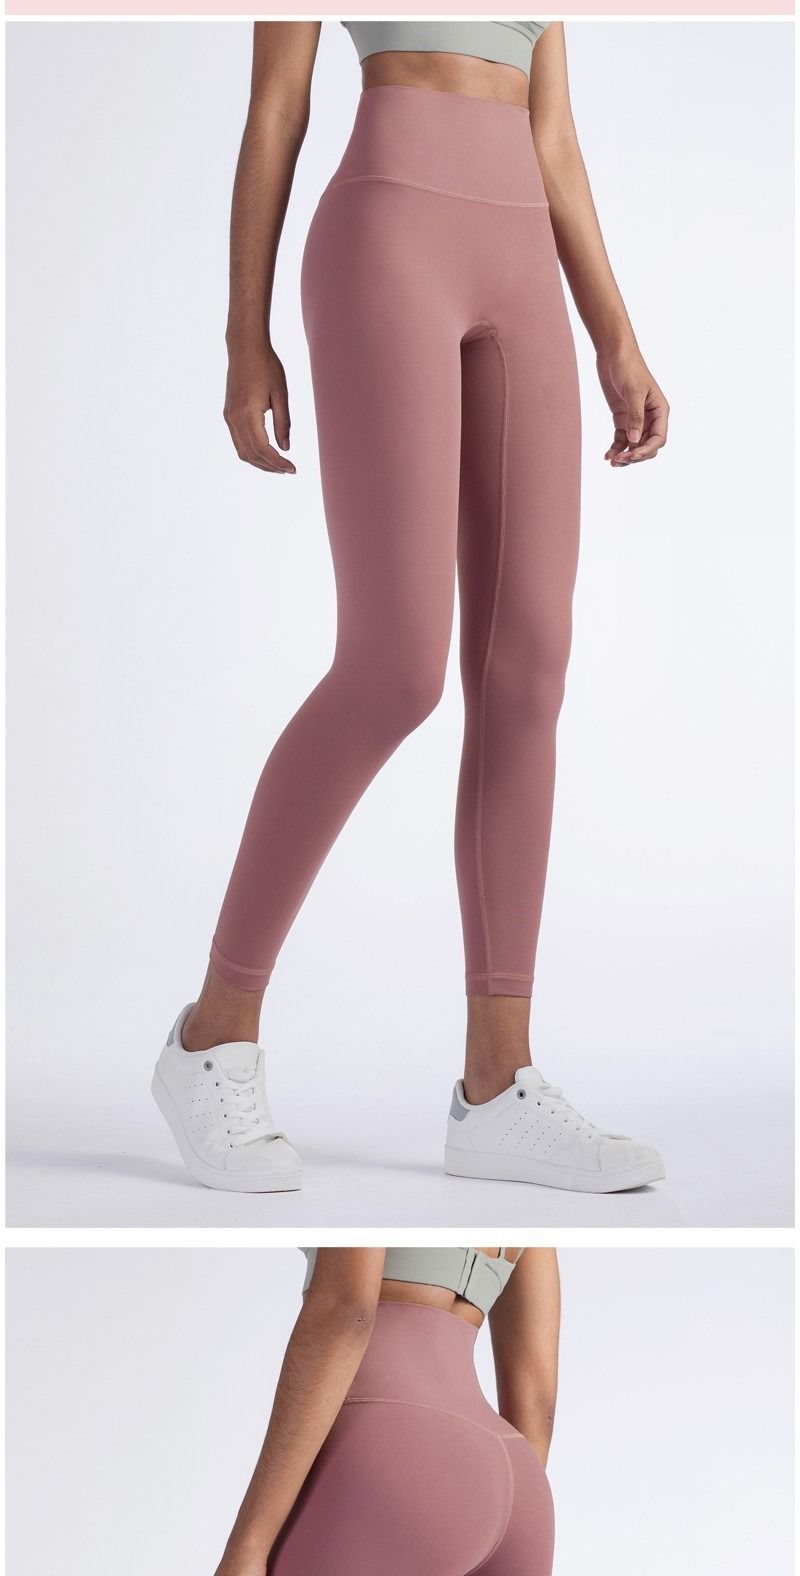 2020 Hot Sale Fitness Female Full Length Leggings 8 Colors Running